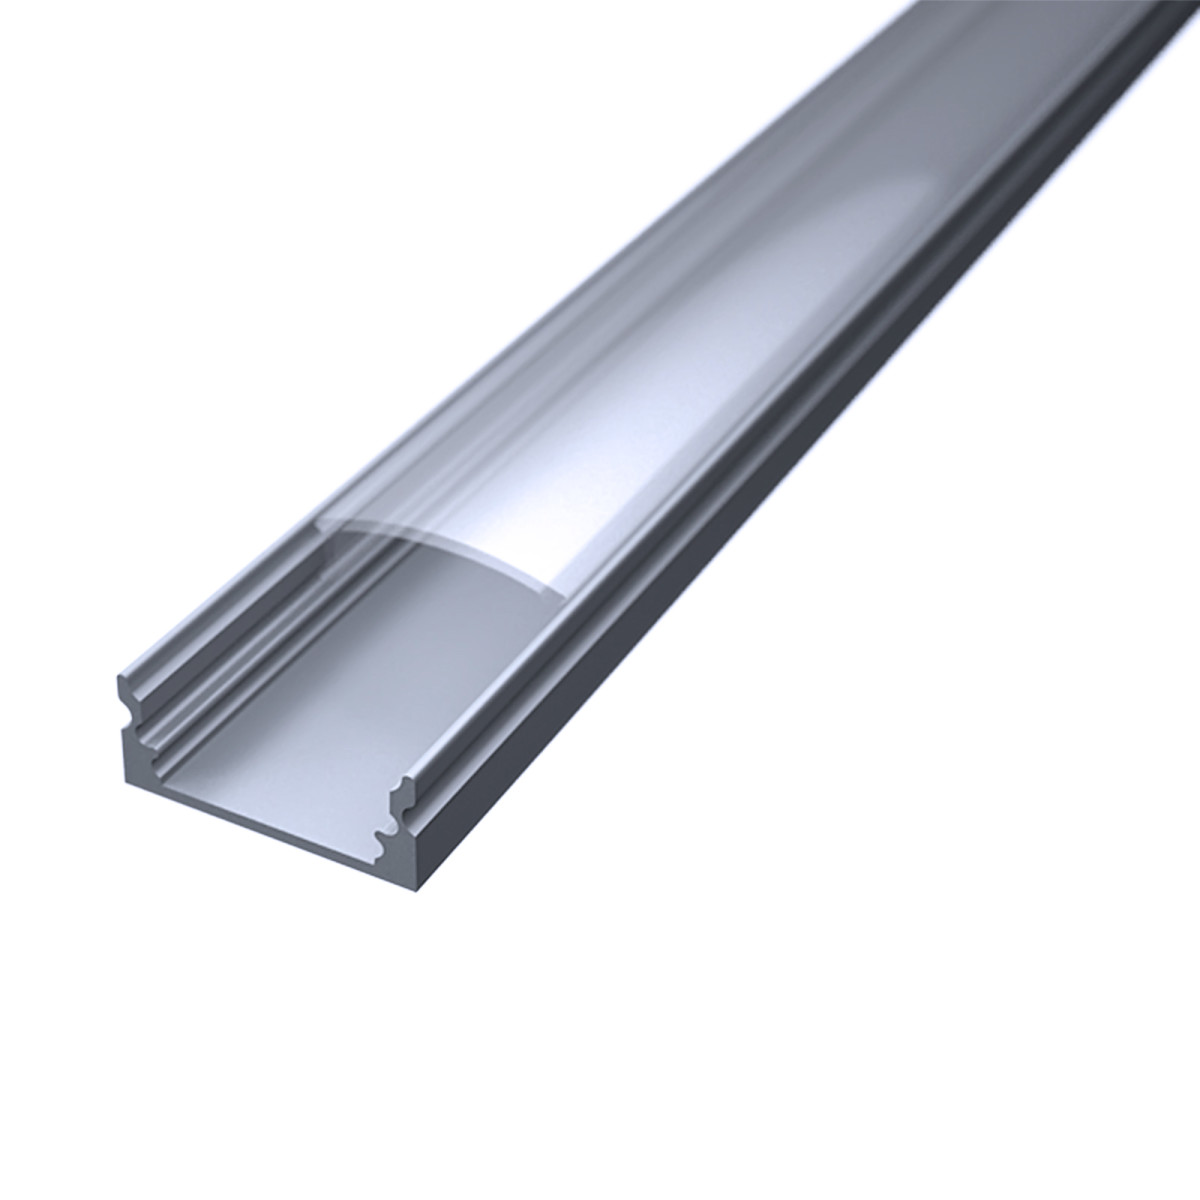 LED Flachprofil "Slim-Line" | Abdeckung transparent | Zuschnitt auf 160cm |